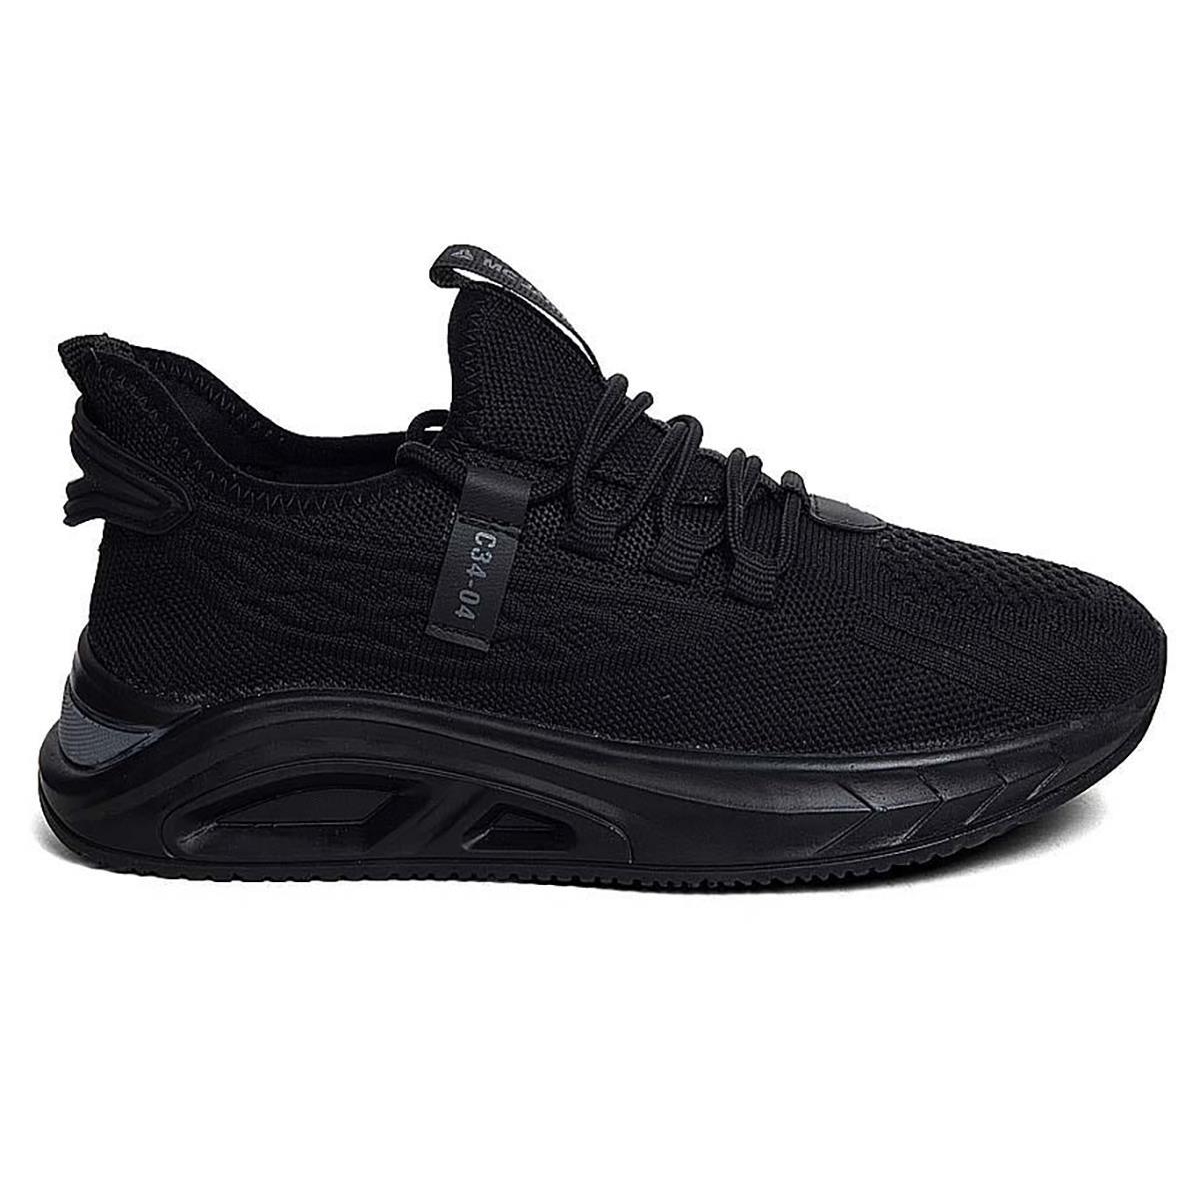 bluefeet mjp siyah fileli rahat İç taban erkek spor ayakkabı 201208672